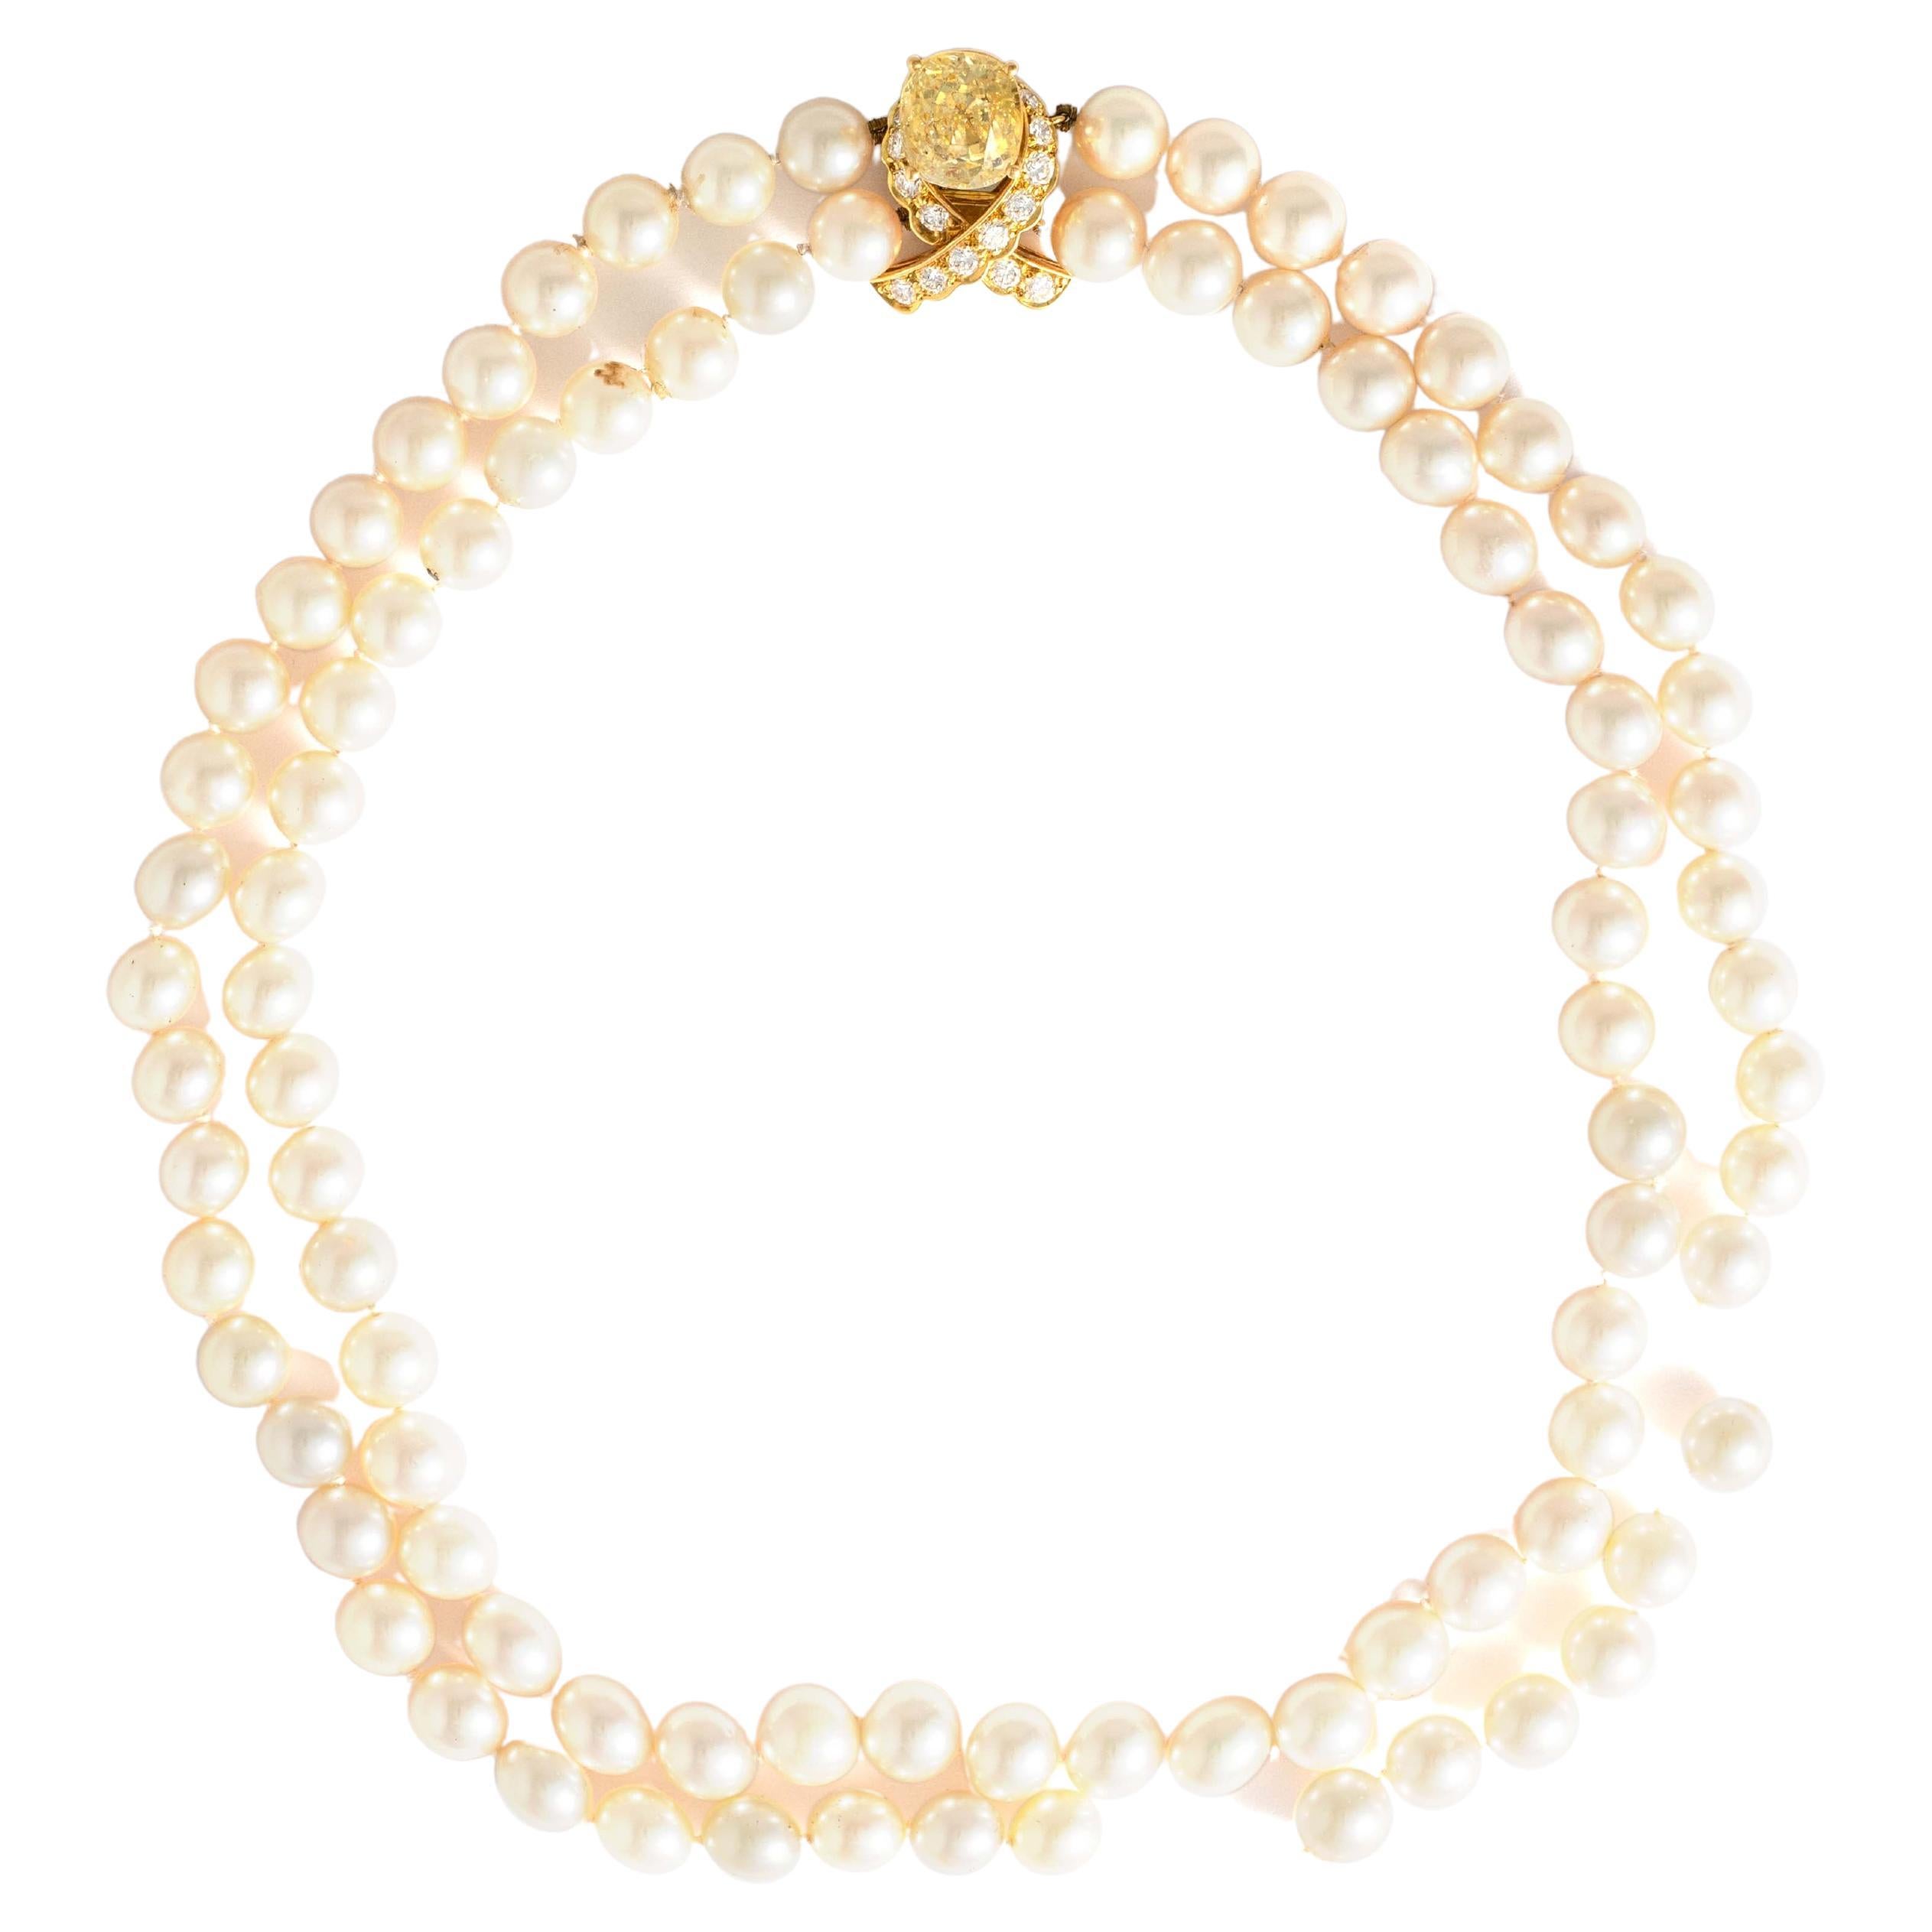 Saphir jaune de forme coussin estimé à environ 5,50 / 6,50 carats (traité) entouré de diamants de taille ronde sur un collier de perles de culture en or jaune 18 carats (le collier de perles est cassé).

Marque de fabrique de Gubelin.
Dimensions du